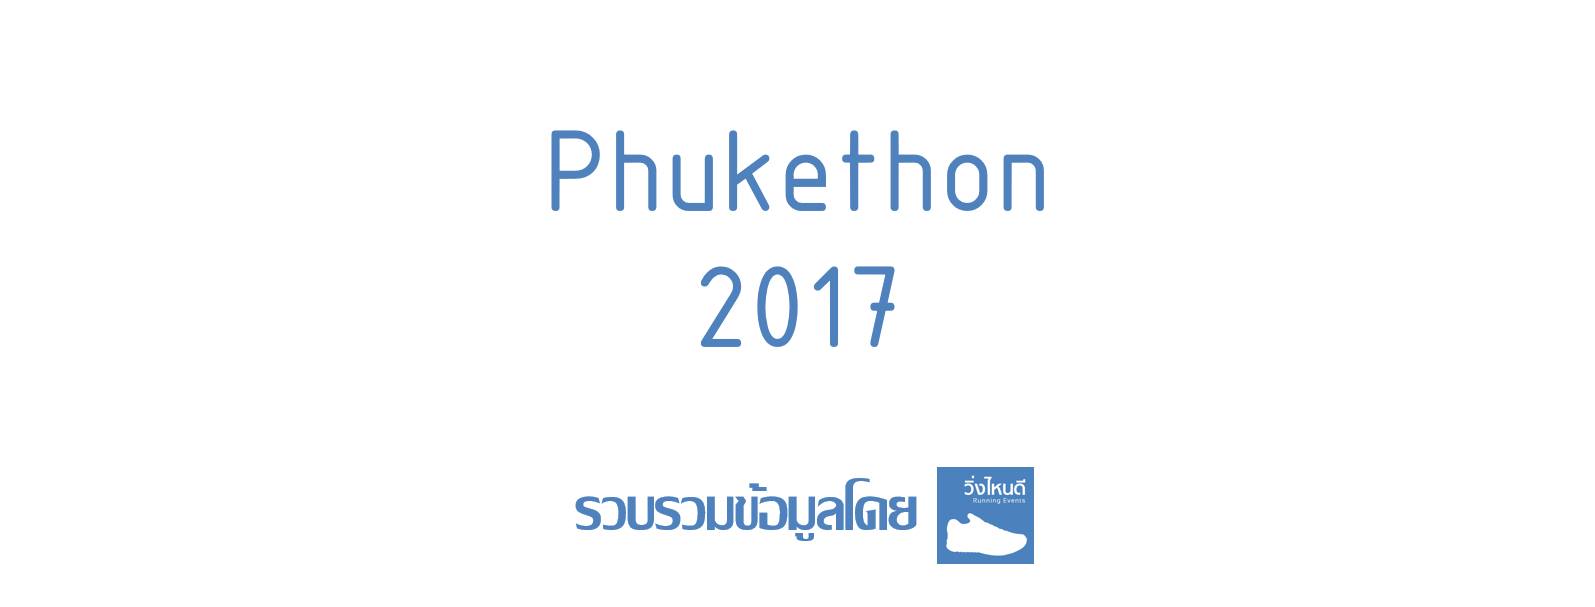 Phukethon 2017